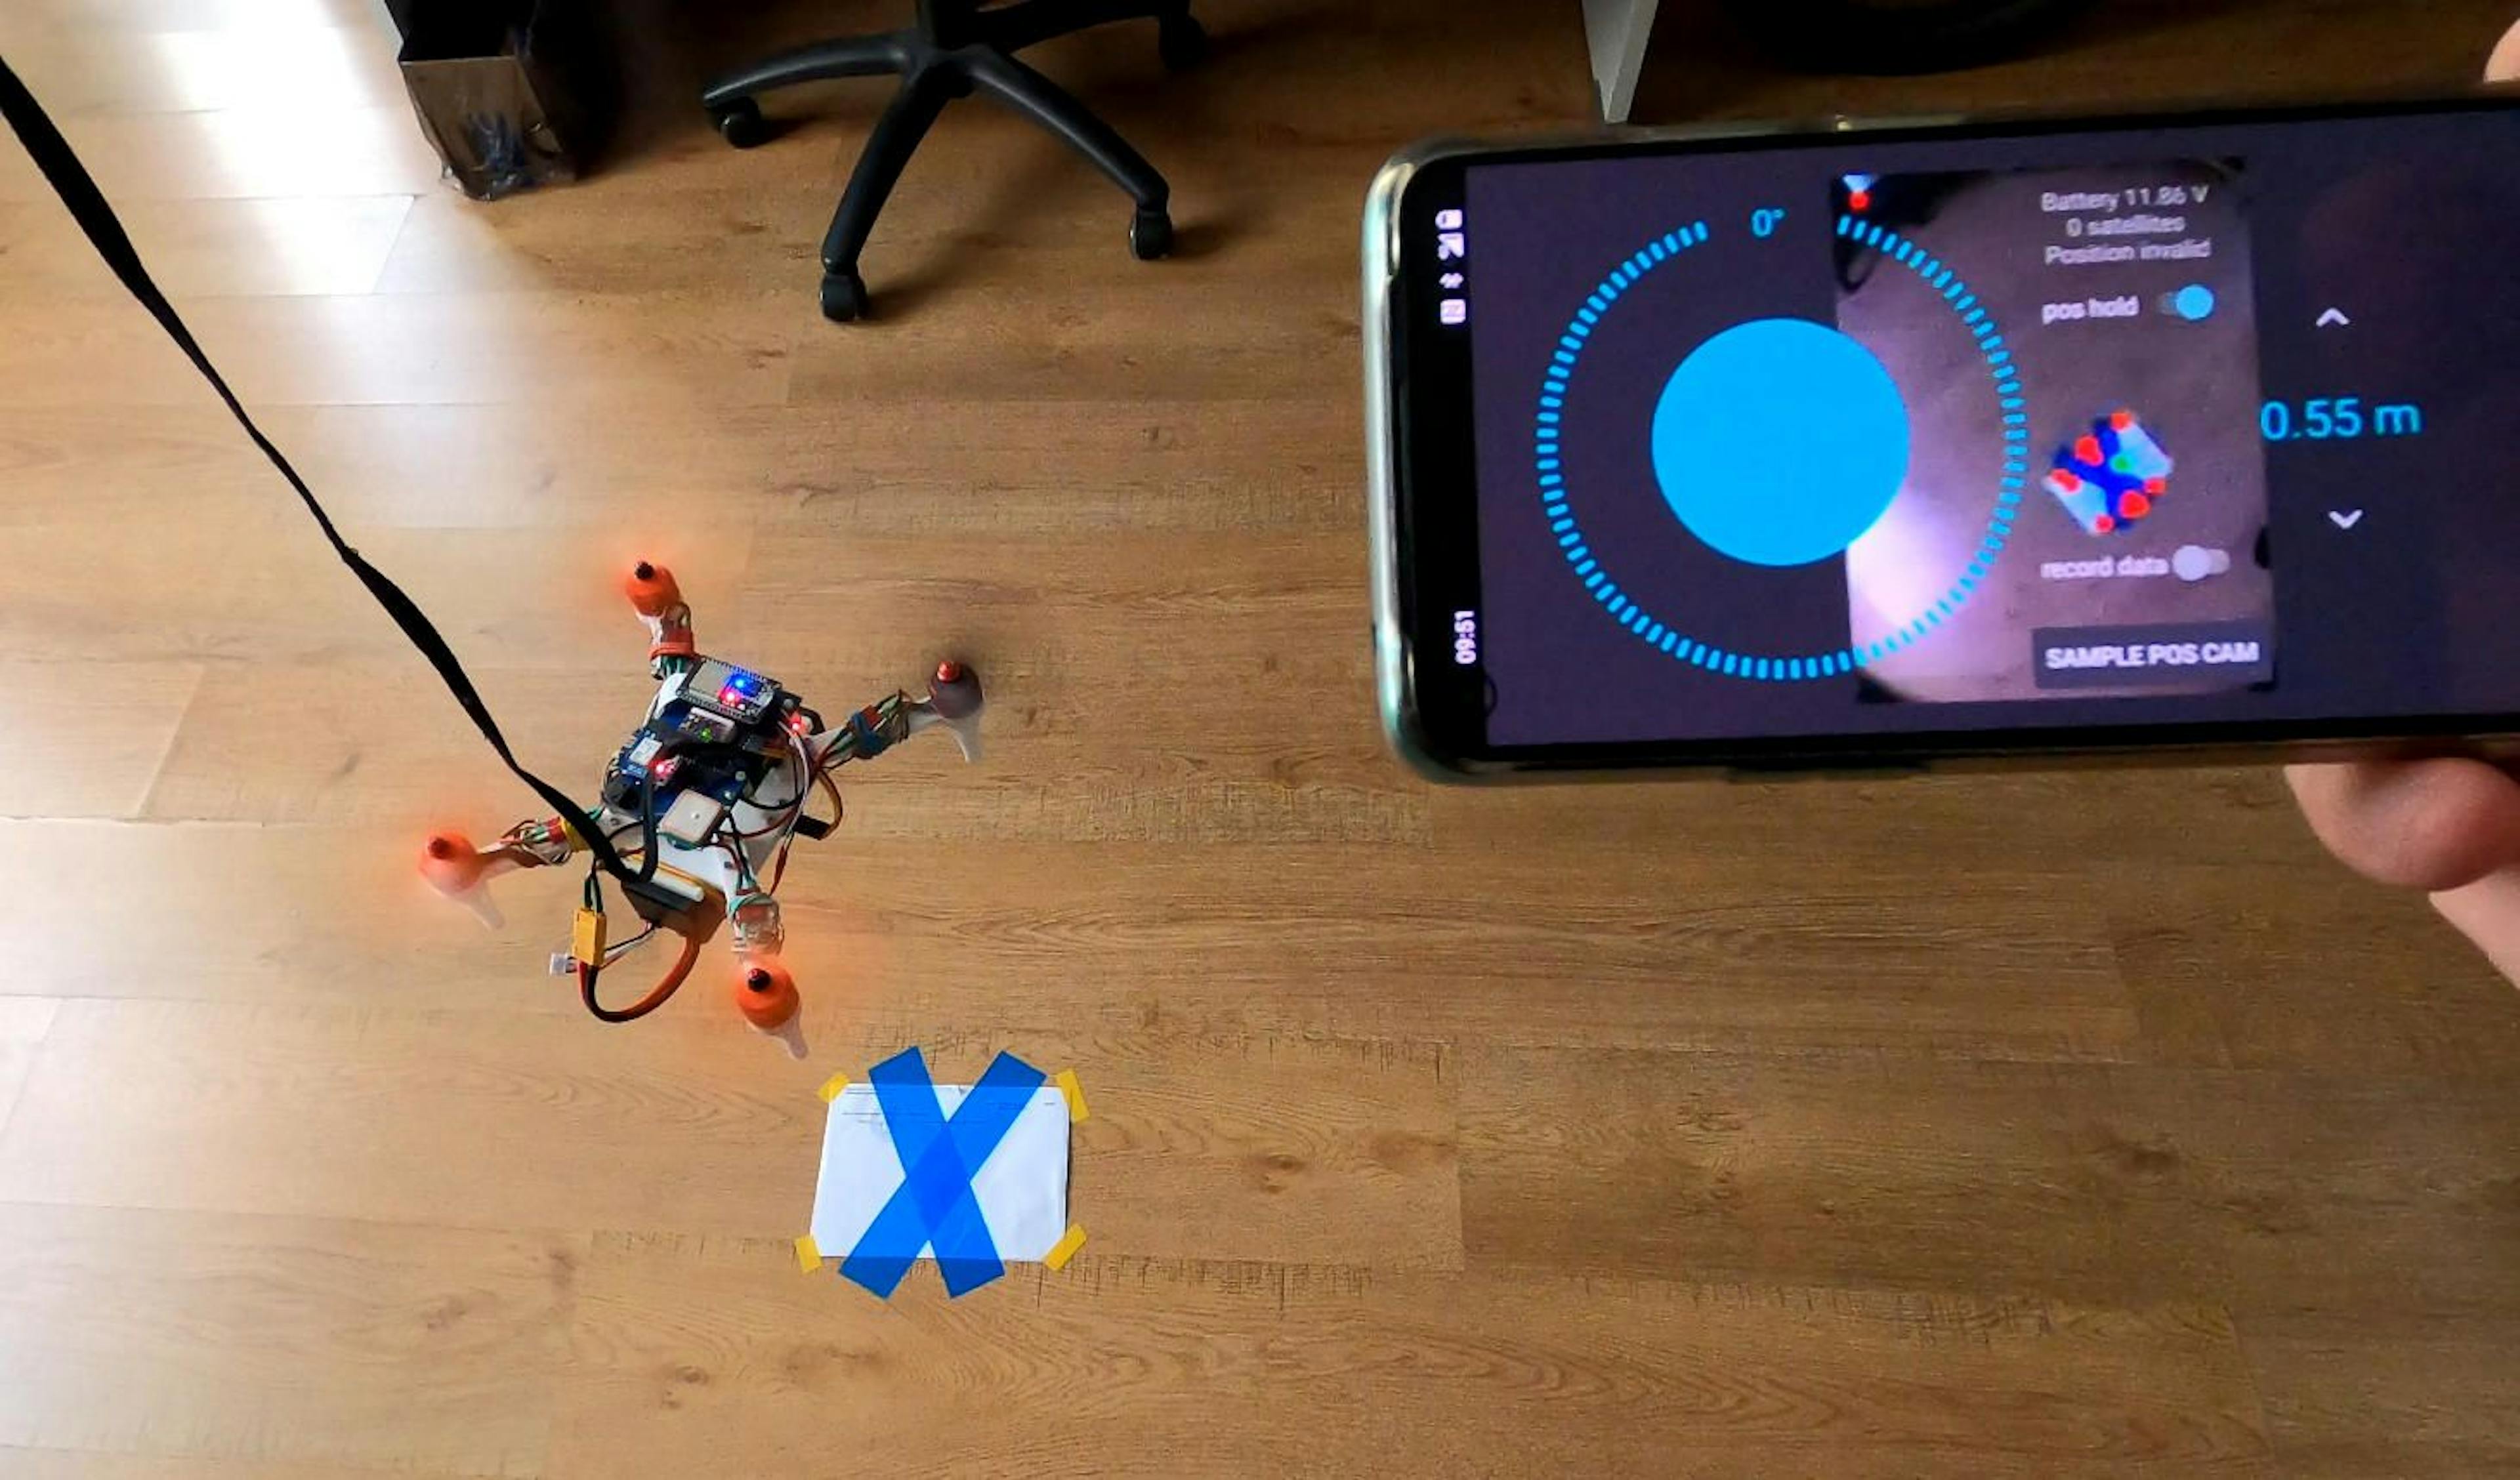 featured image - Construindo um drone Raspberry Pi + ESP32: meus primeiros passos na robótica